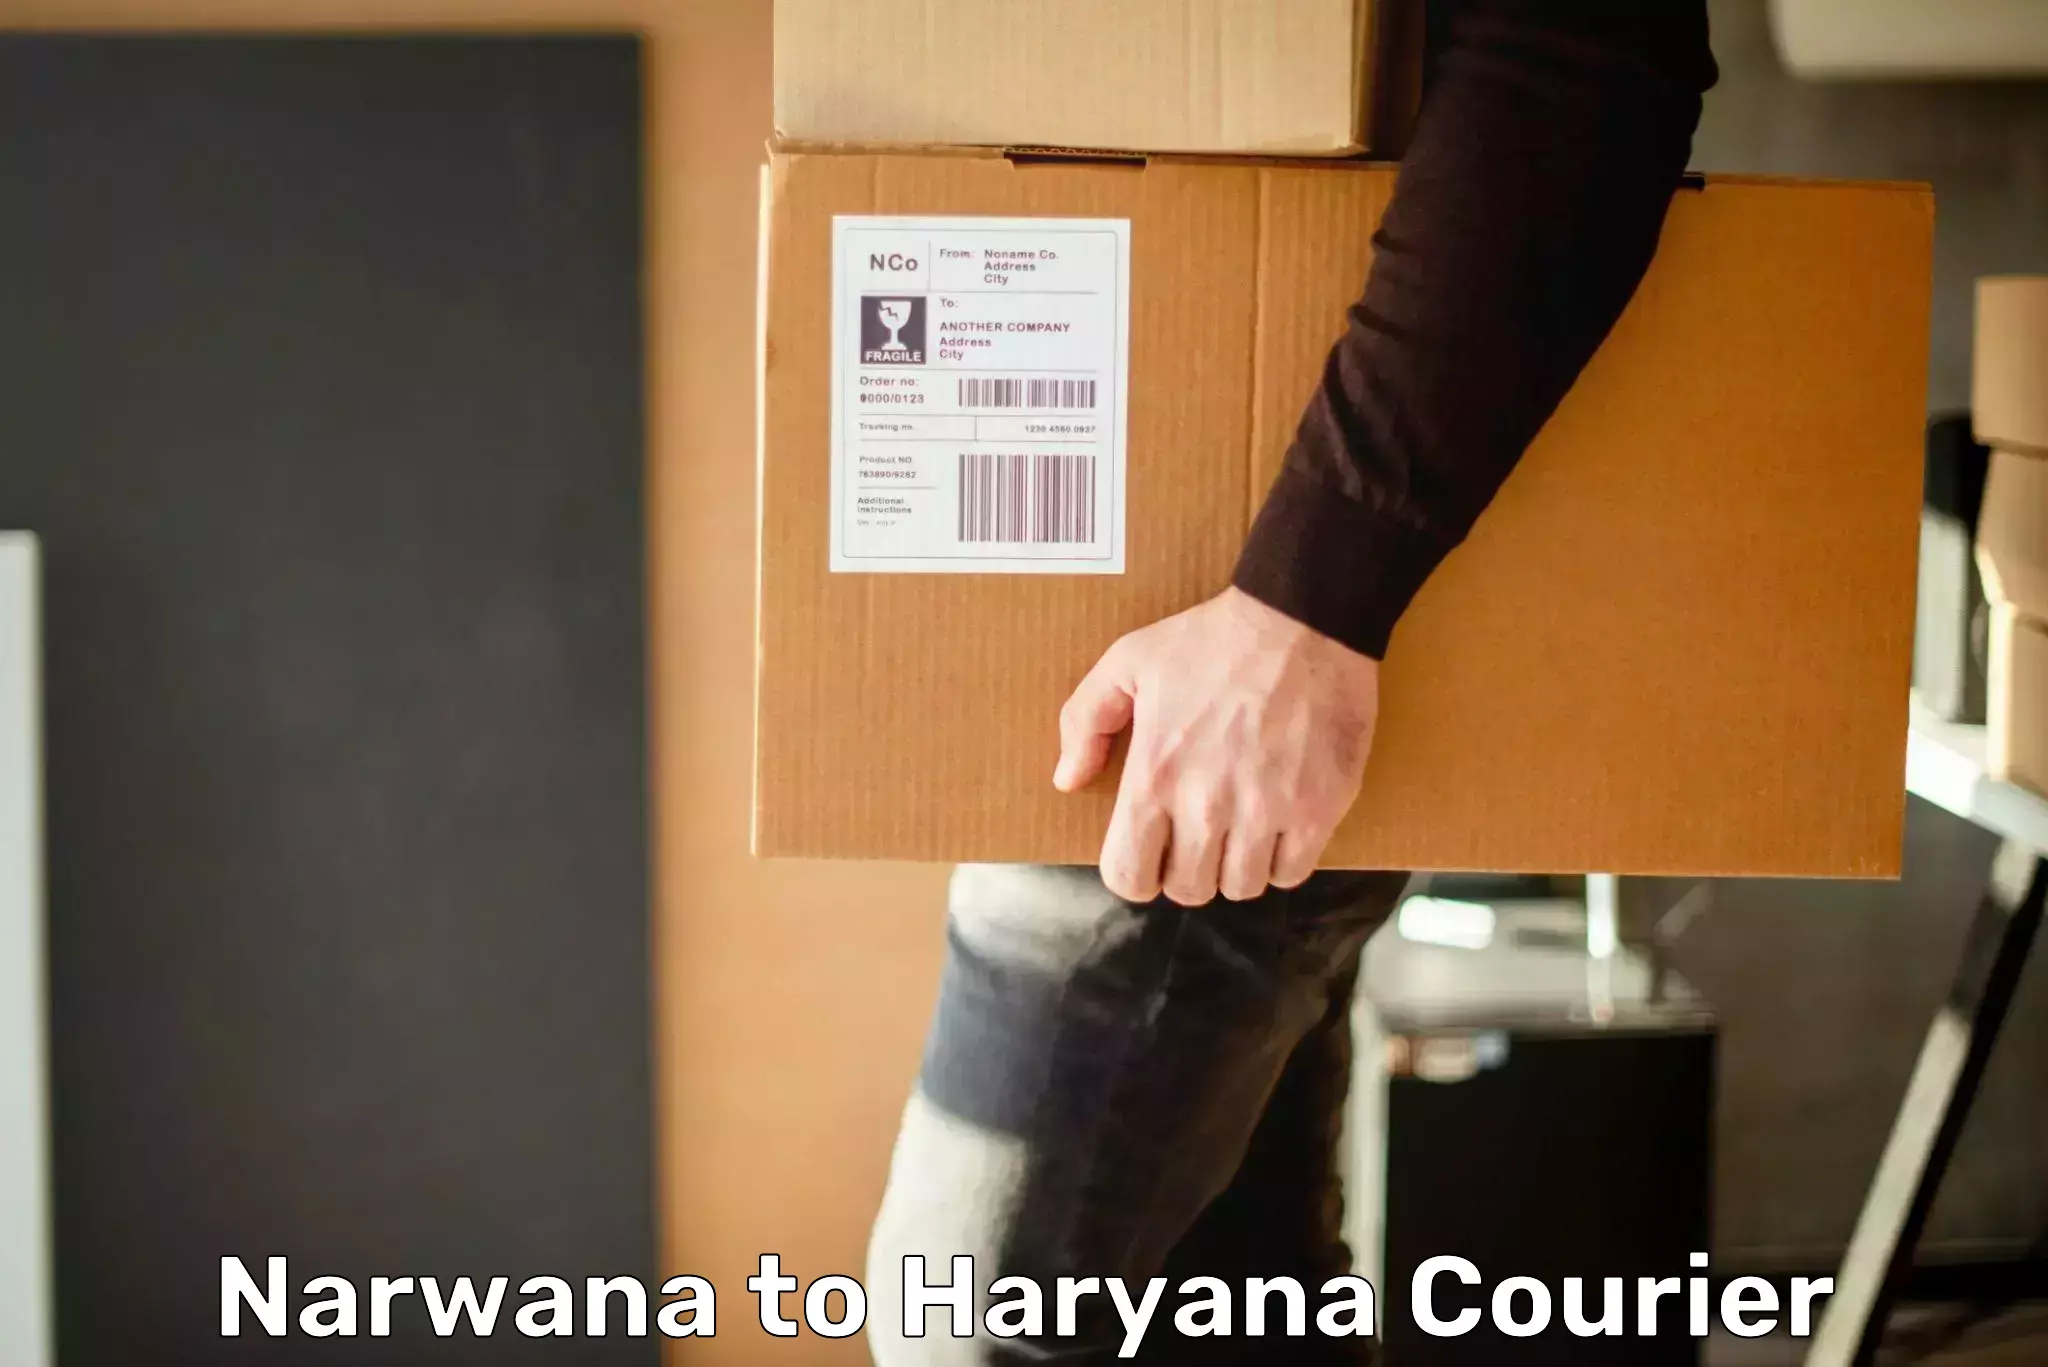 High-speed parcel service Narwana to Kurukshetra University